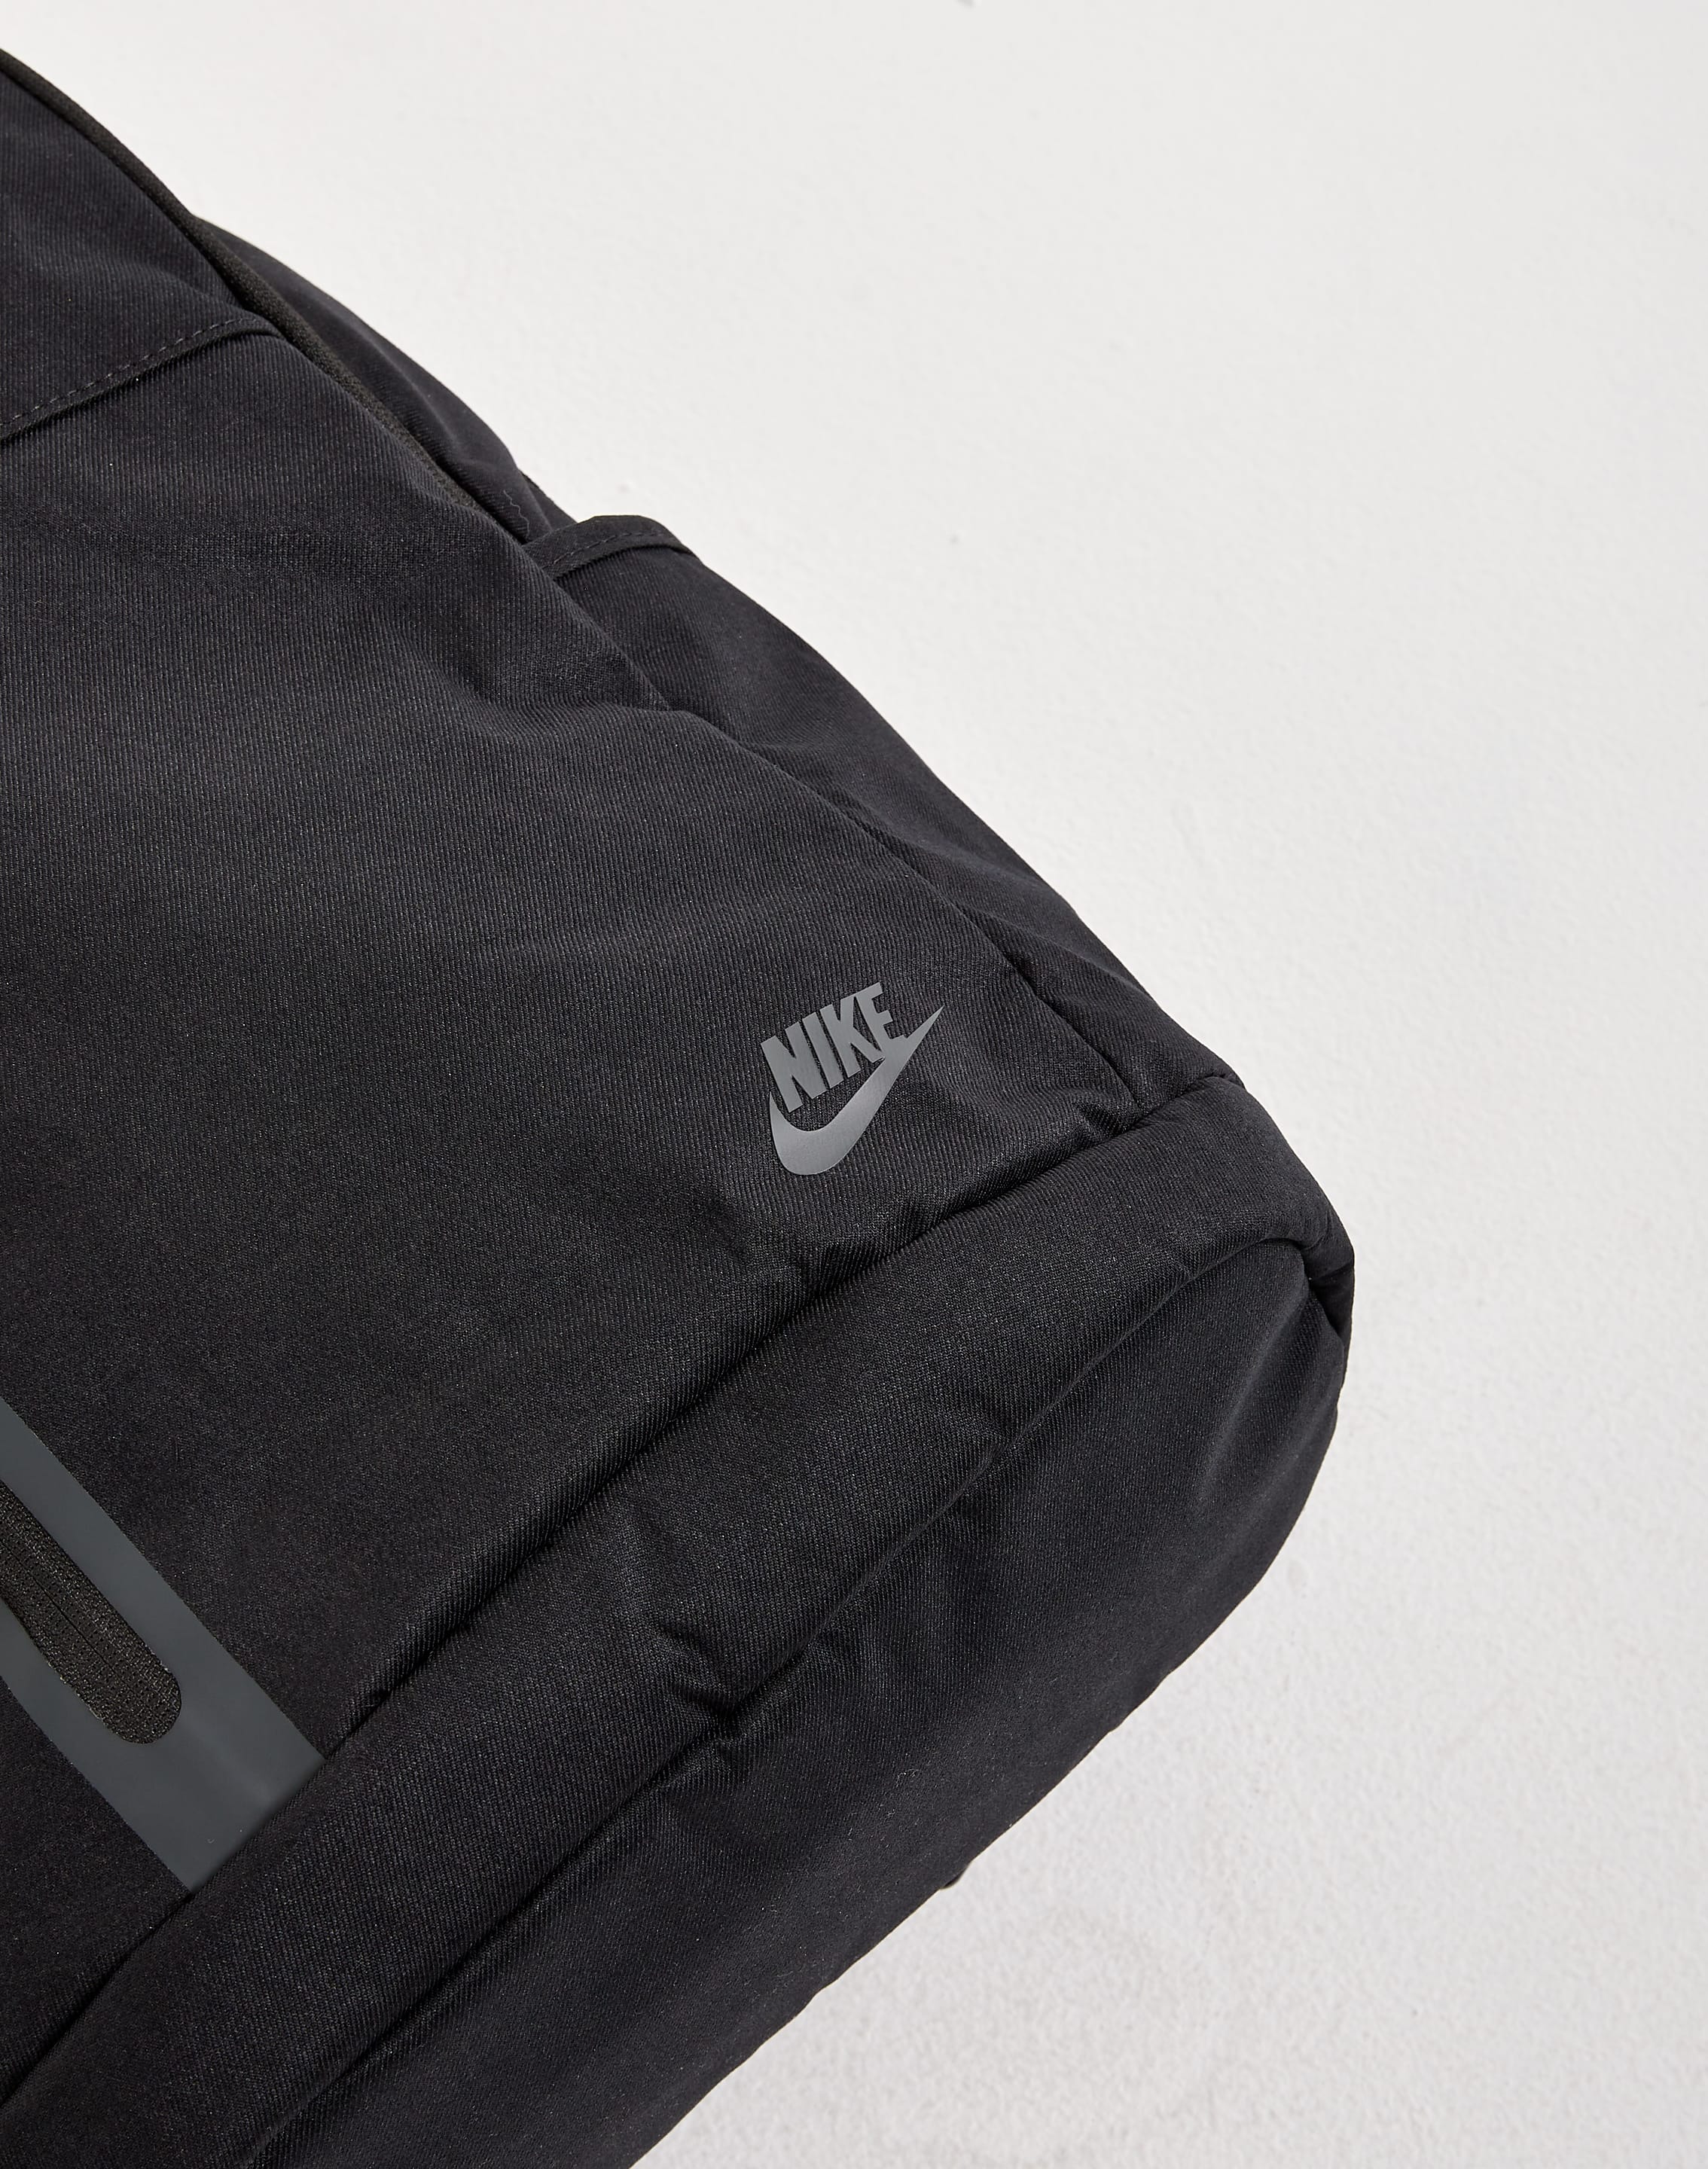  Nike Elemental Backpack (Black/Ash Slate) : Clothing